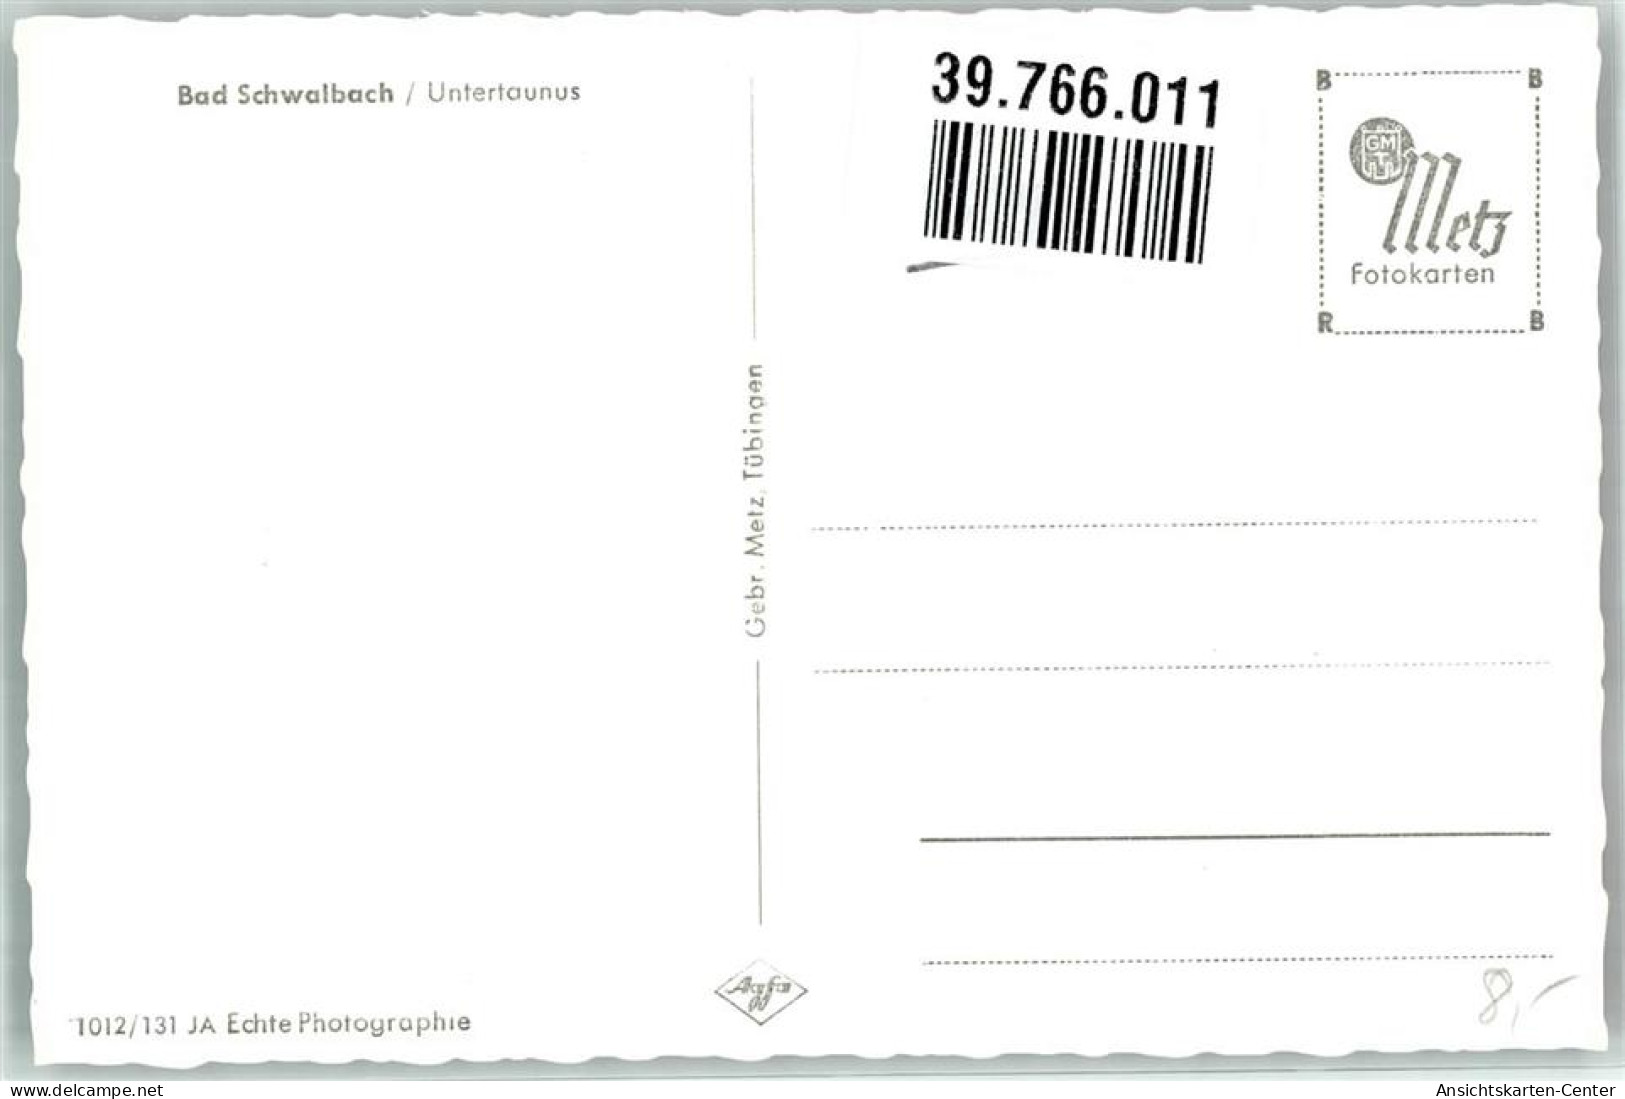 39766011 - Bad Schwalbach - Bad Schwalbach